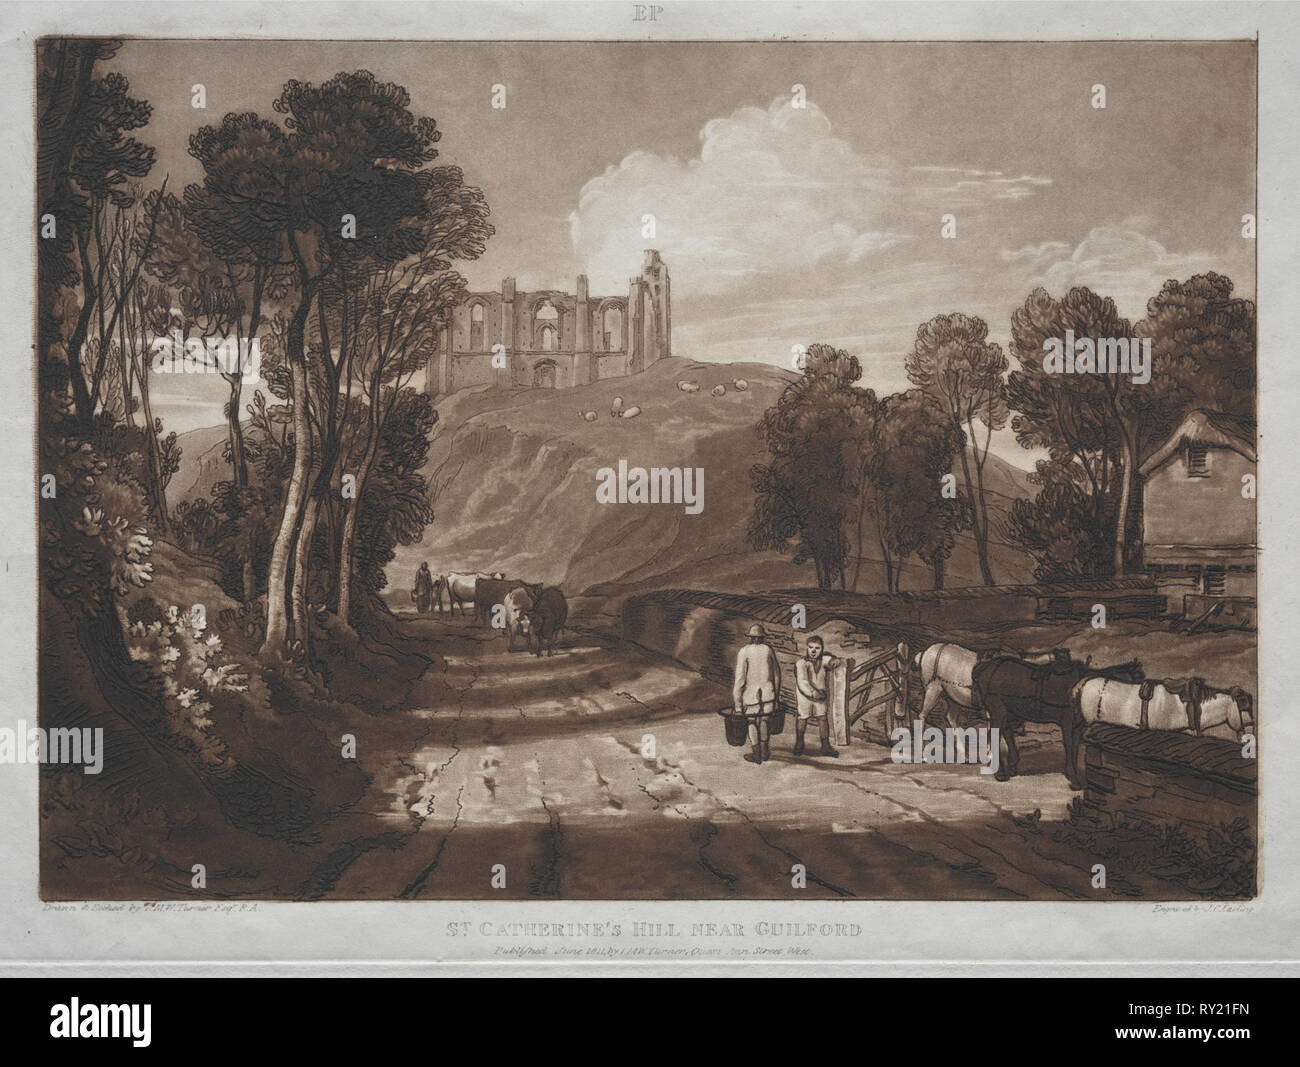 Liber Studiorum: St. Catherine's Hill, in der Nähe von Guilford. Joseph Mallord William Turner (British, 1775-1851). Ätzen und schabkunst Stockfoto